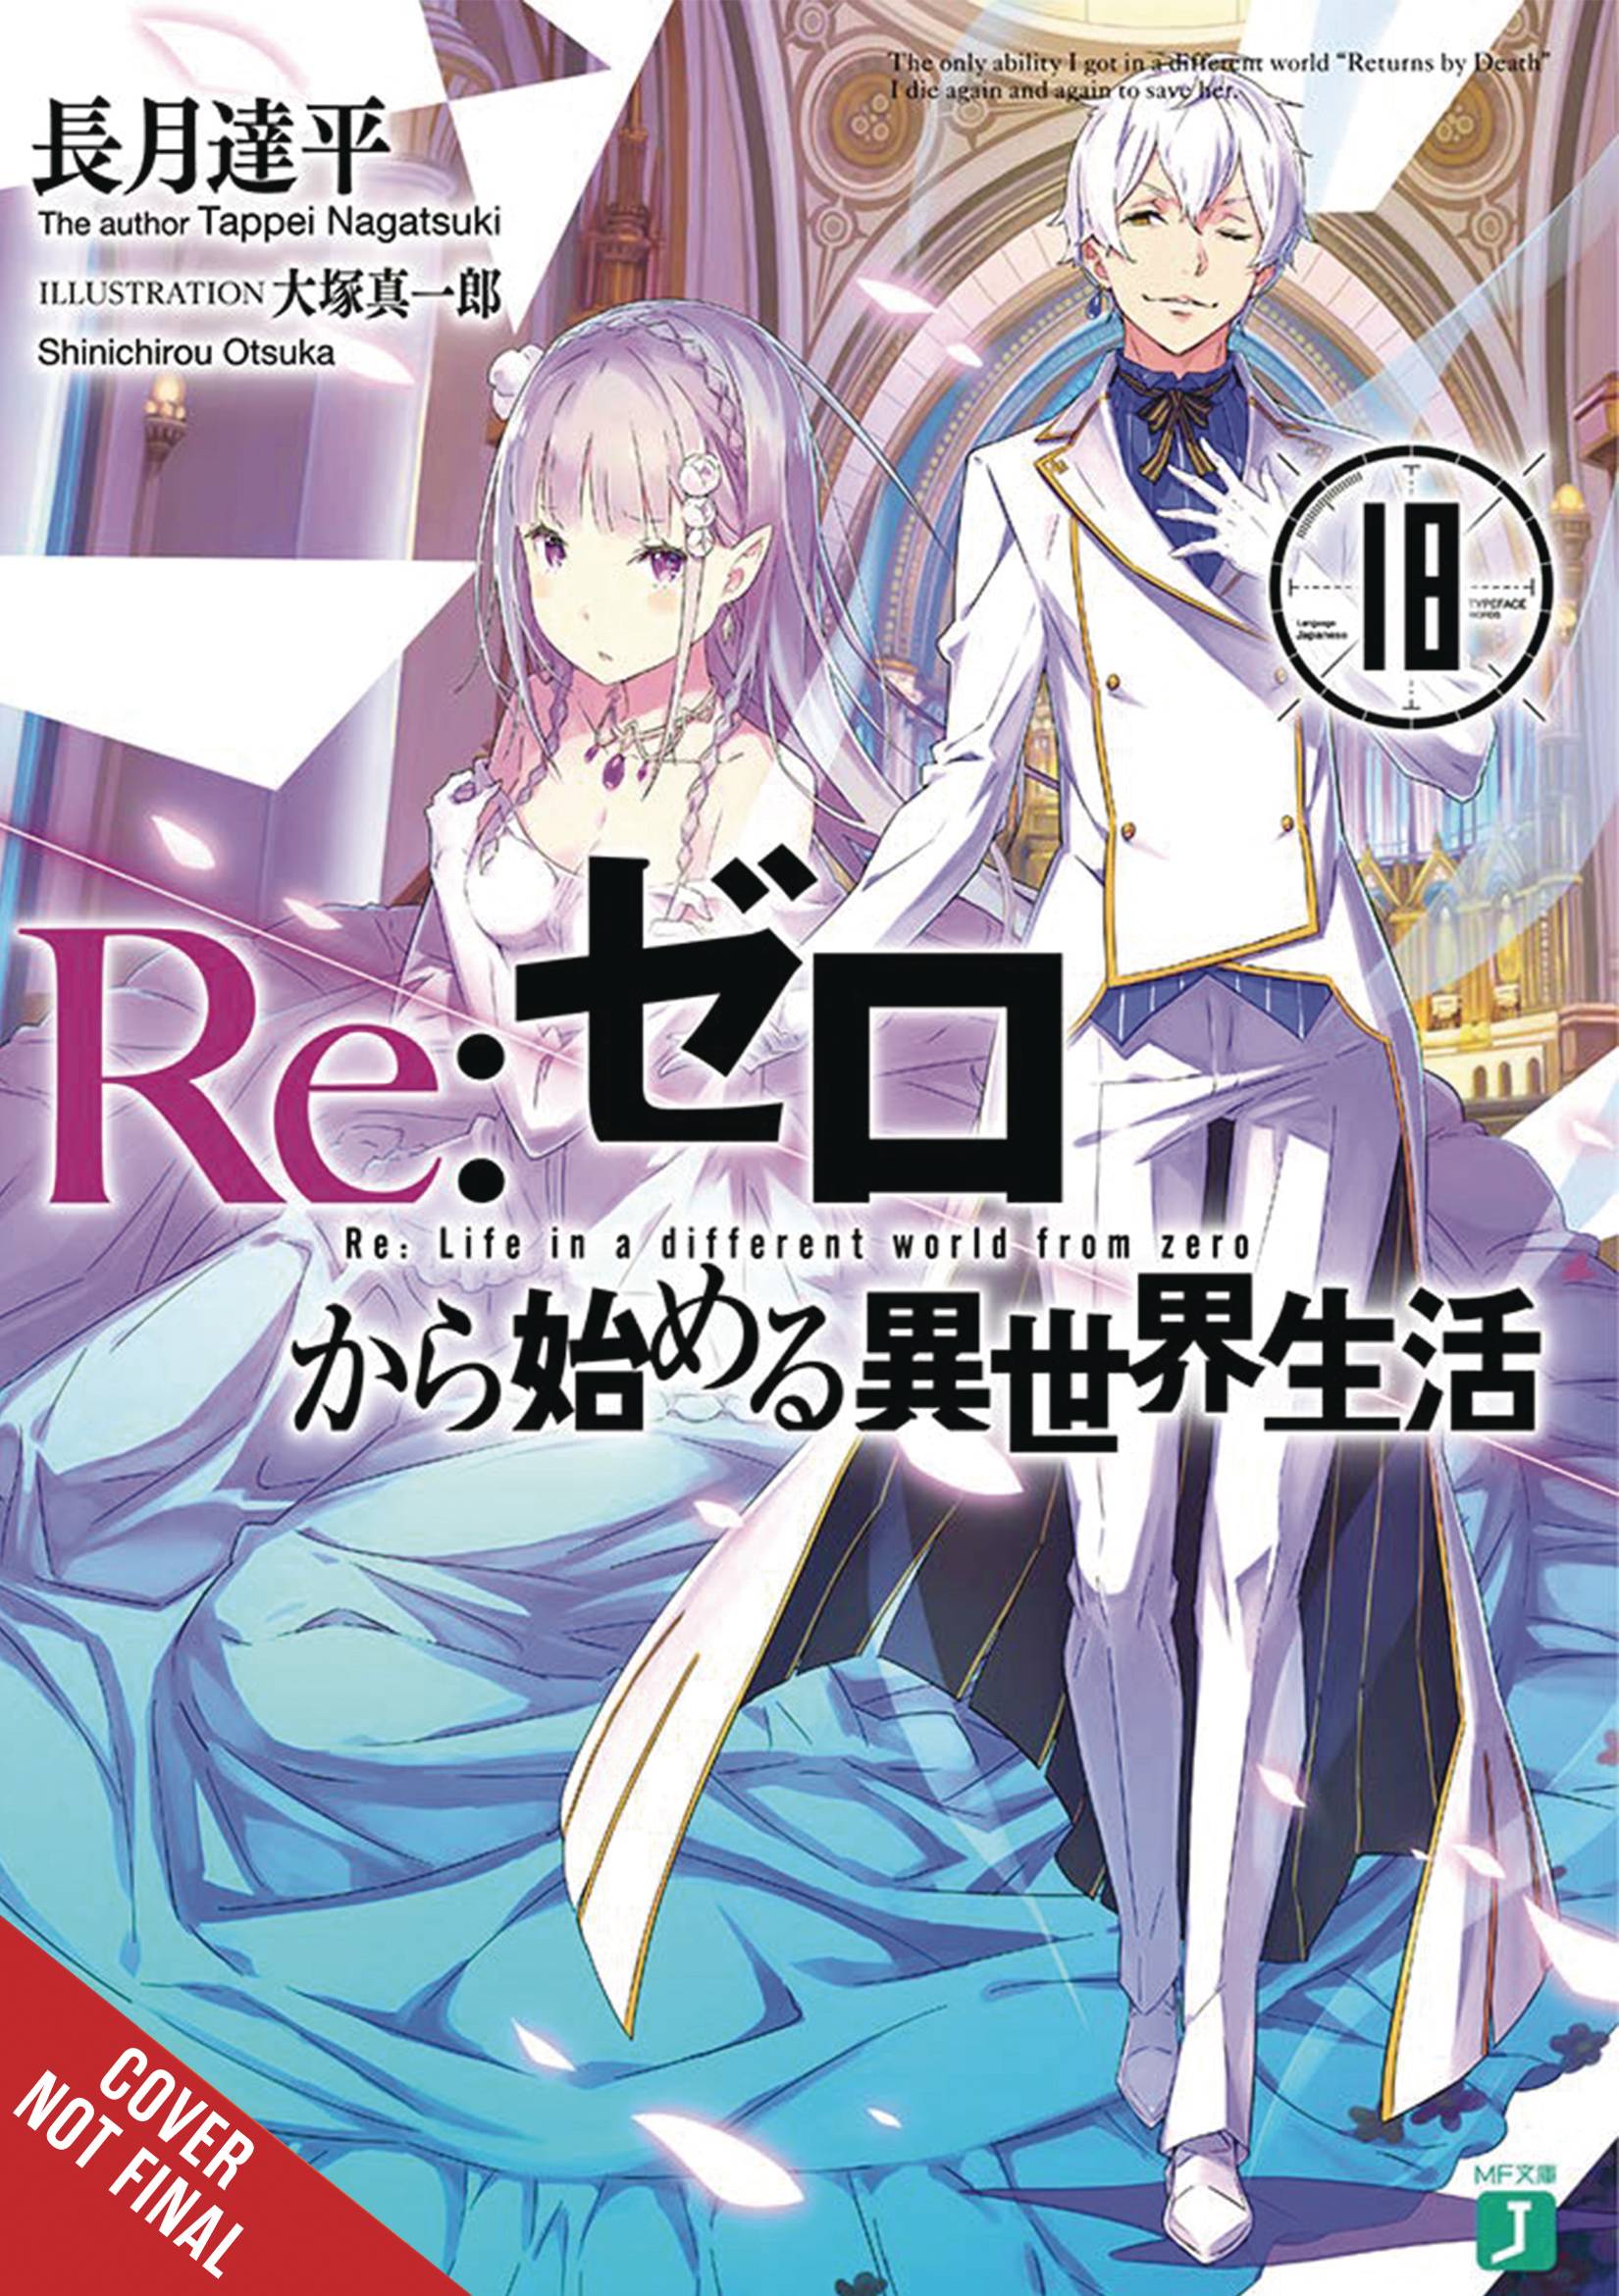 Mushoku Tensei: Jobless Reincarnation (Light Novel) Vol. 26 | Seven Seas  Entertainment